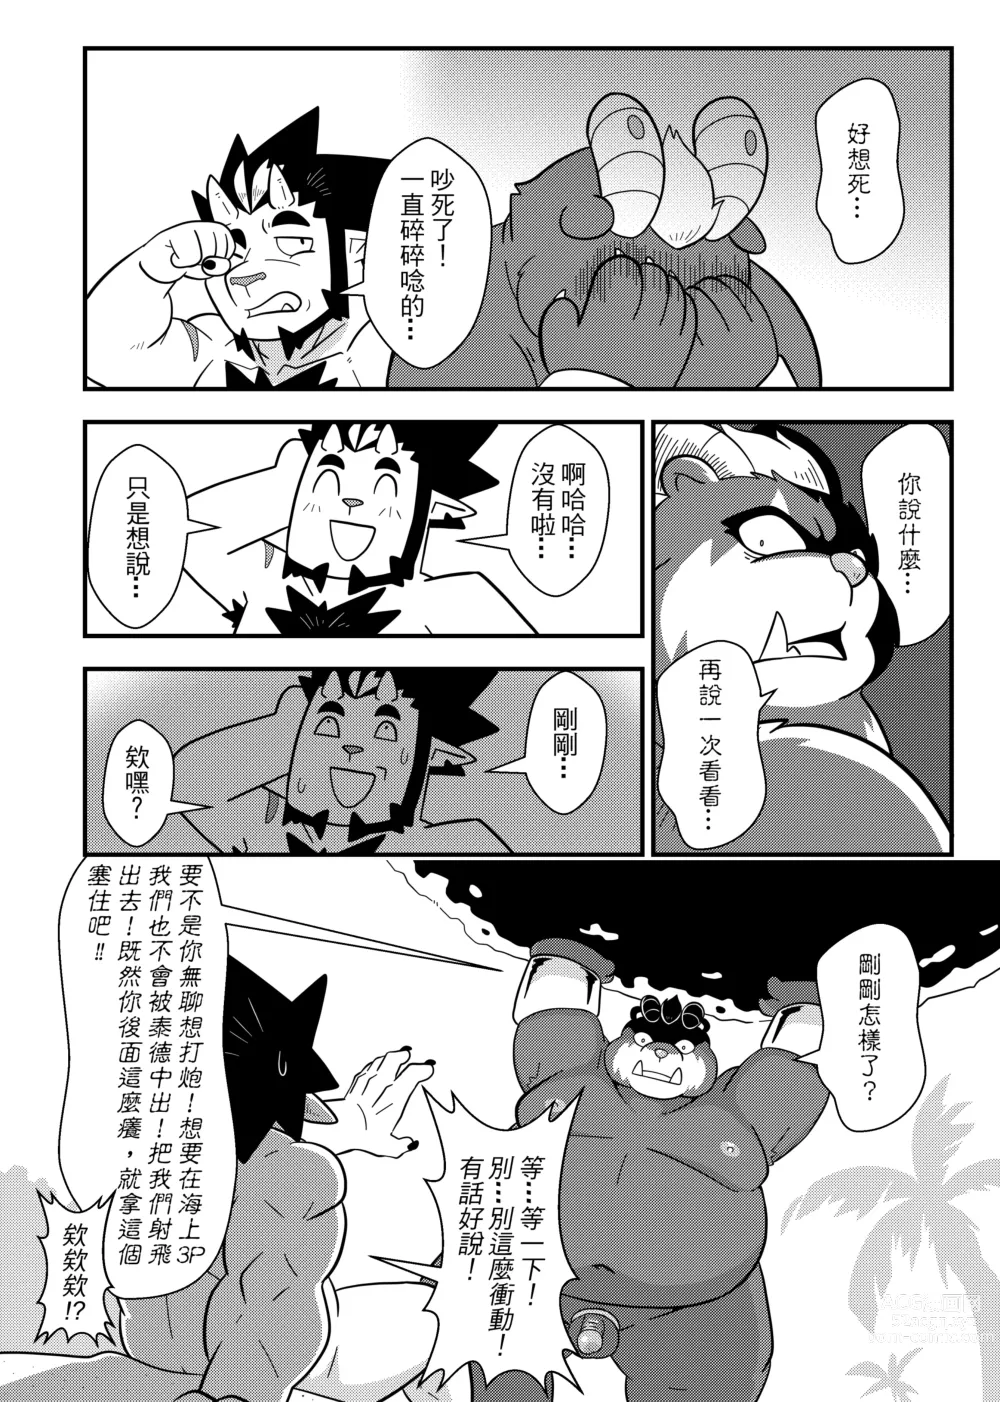 Page 5 of doujinshi 勇者的大小只有魔王塞得下4